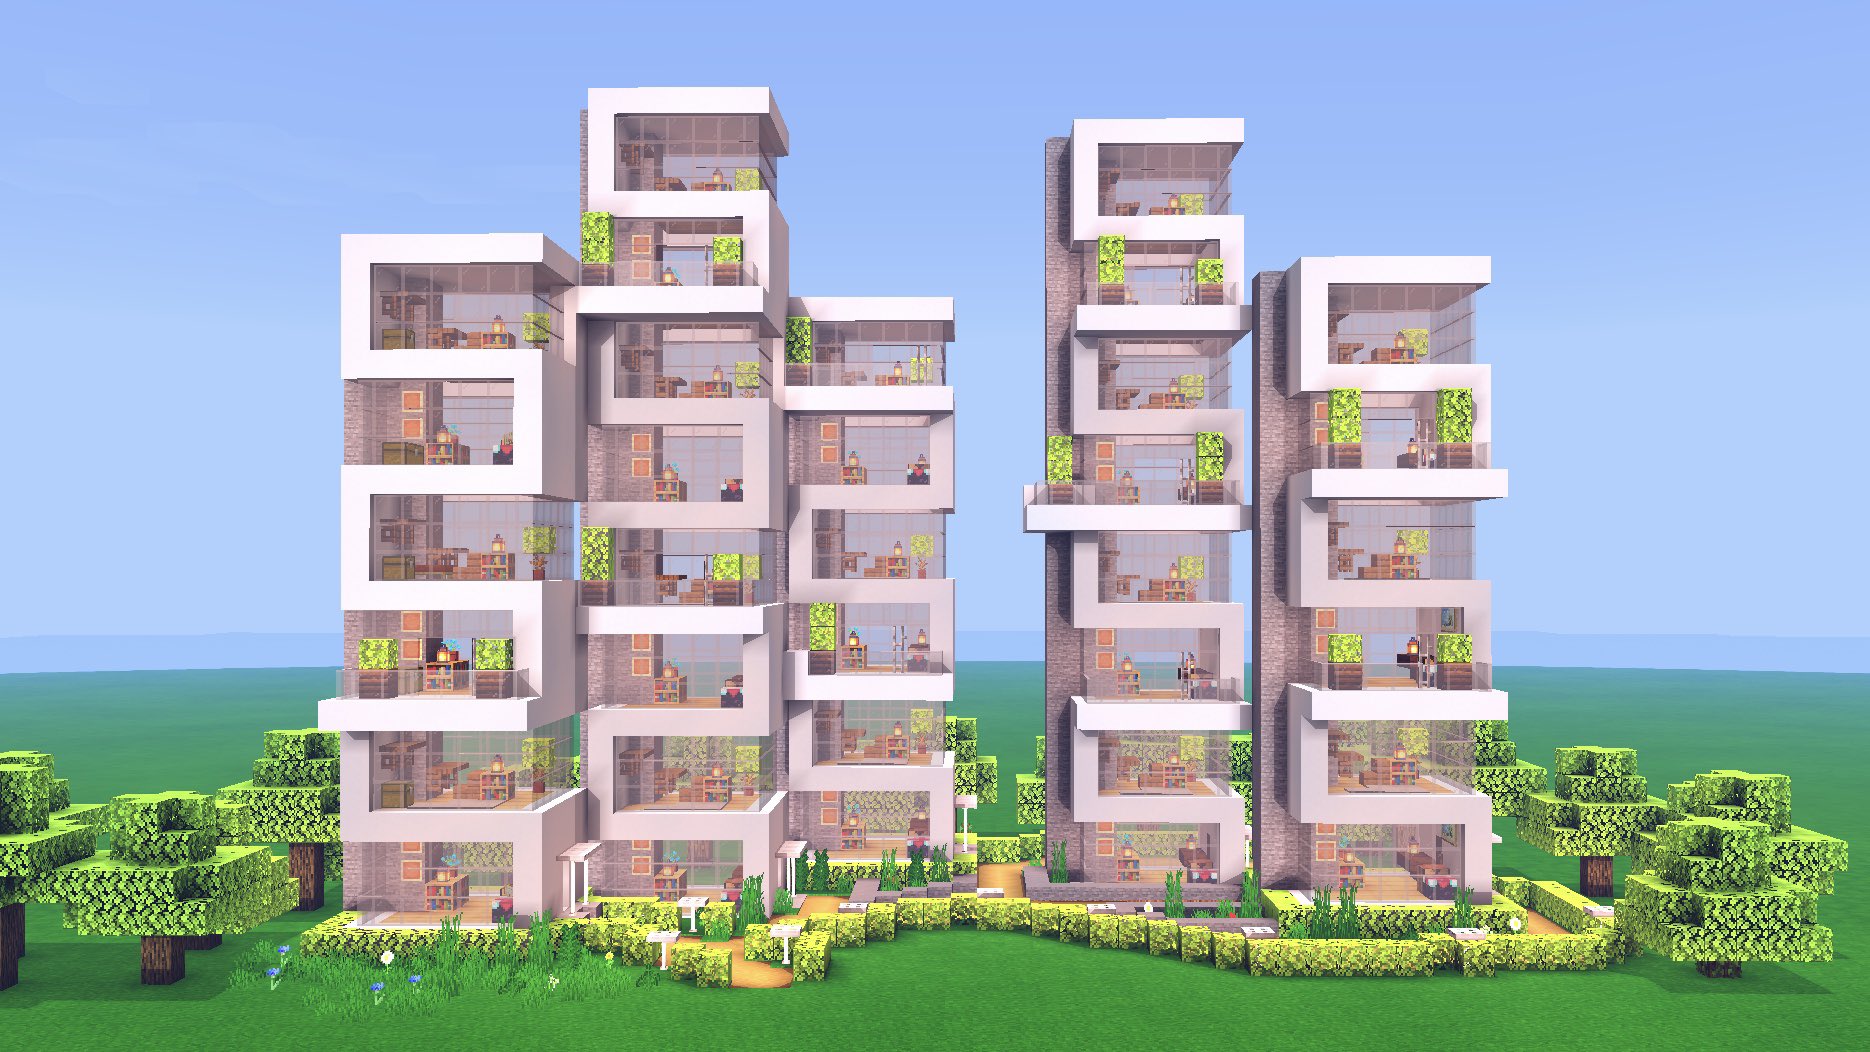 こぐまぷろ Kogumapro 先日上げた7 7の家は上に増築するのが簡単なので 高層住宅っぽいのも作れます 個人的には村人さんの住処につかってみたいなぁ 色を変えていっても面白いかも知れませんね マイクラ Minecraft建築コミュ マインクラフト